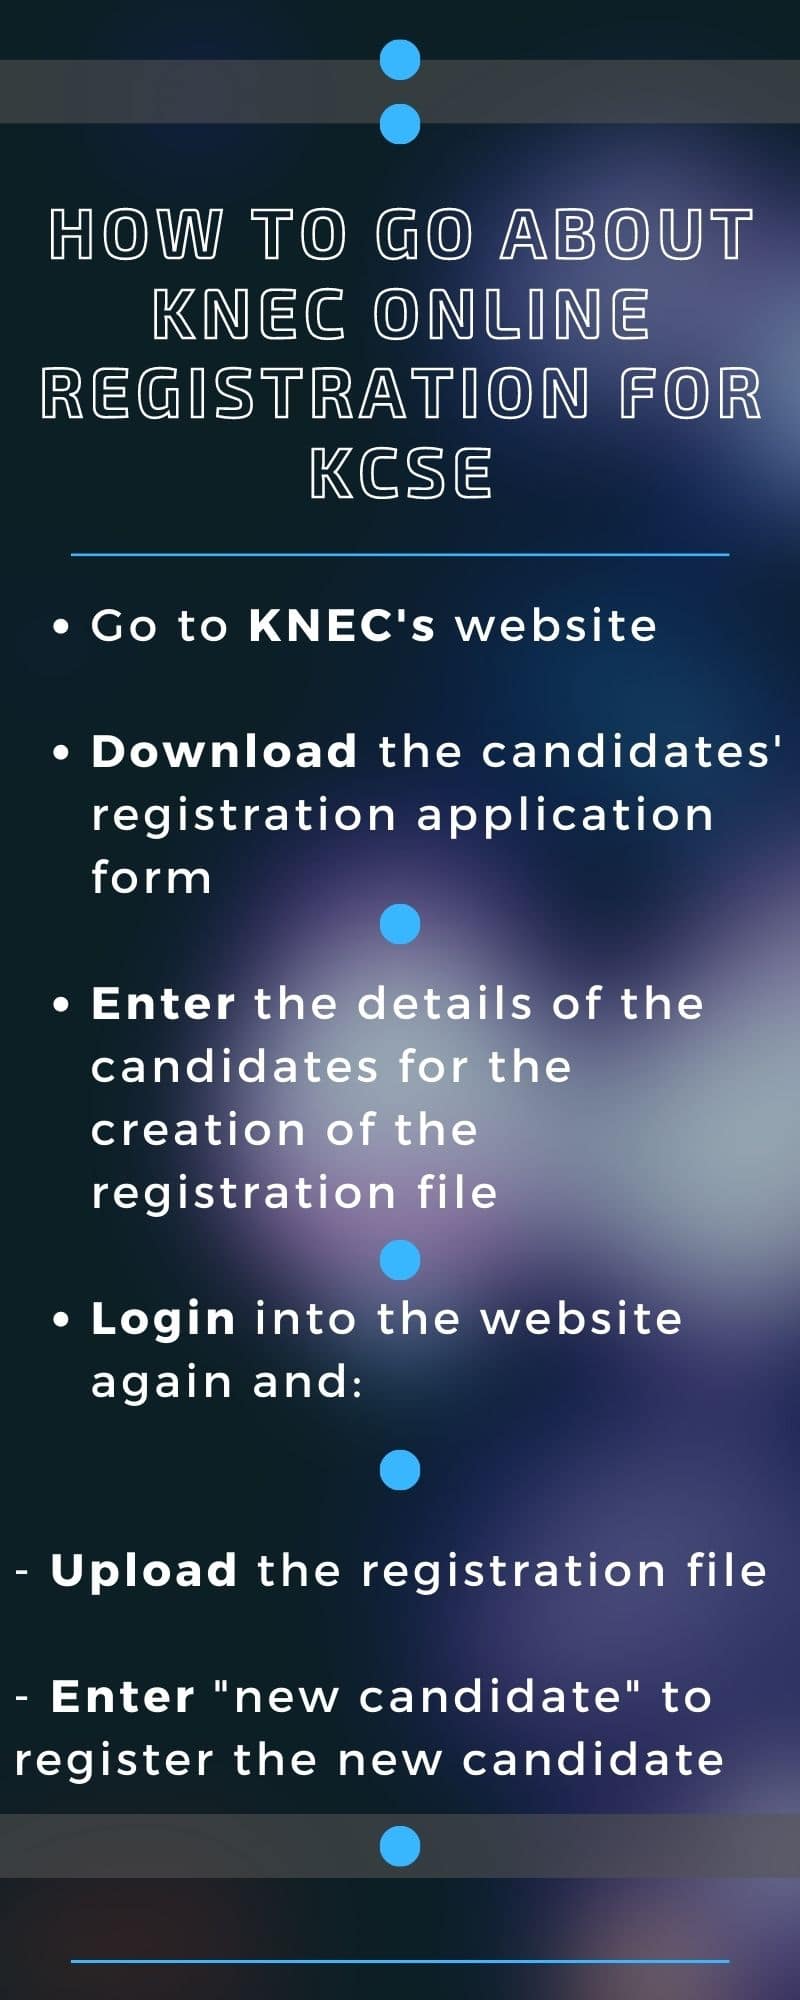 KCSE registration